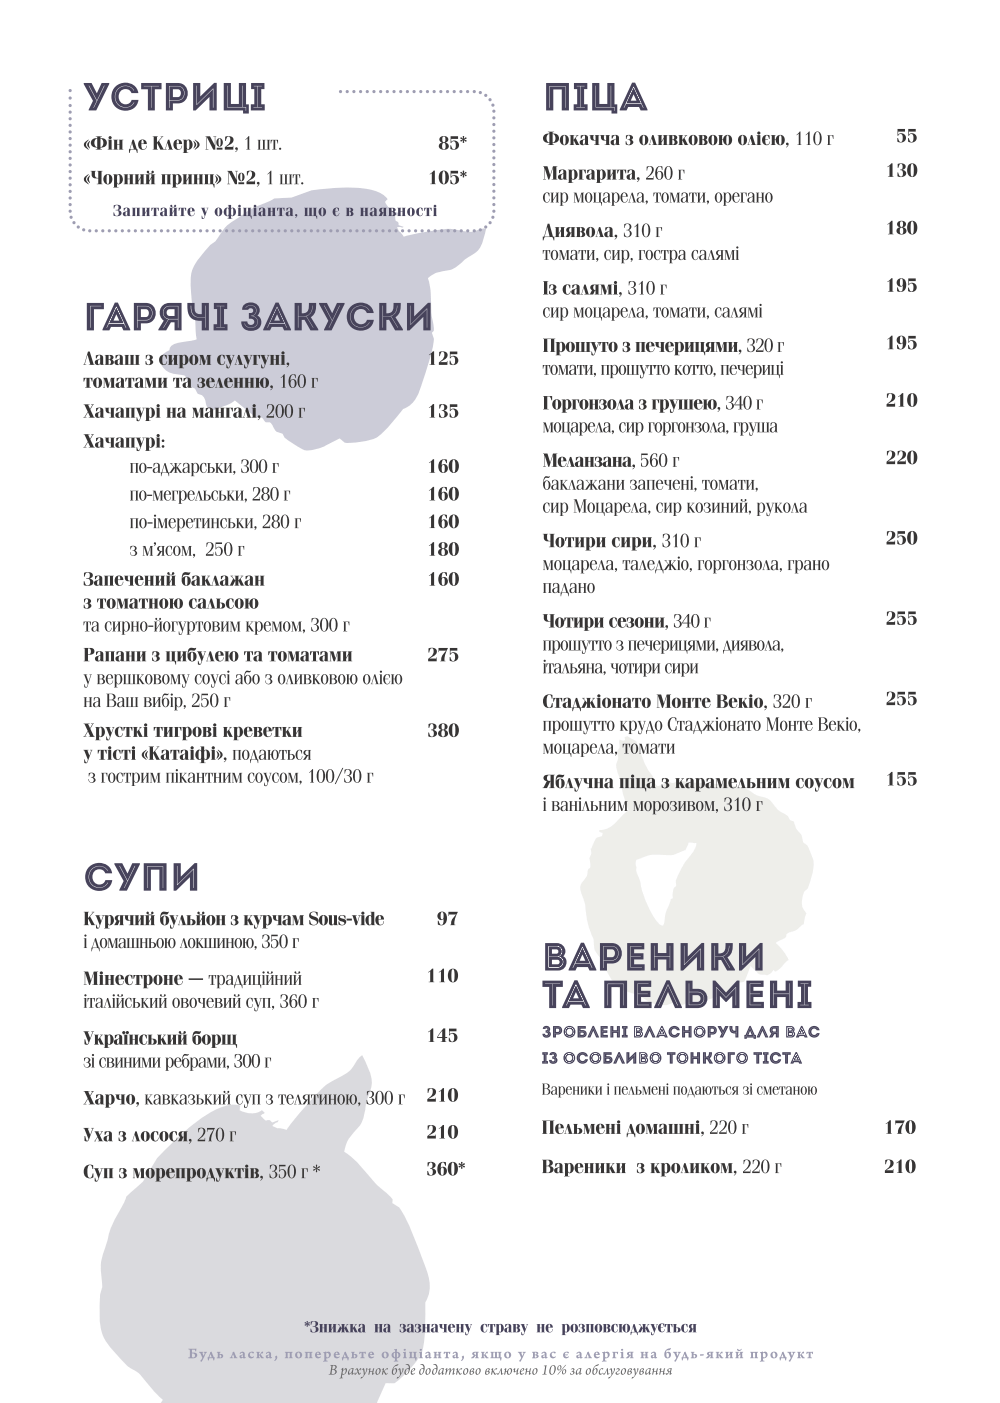 Основное меню ресторана СМОРОДИНА